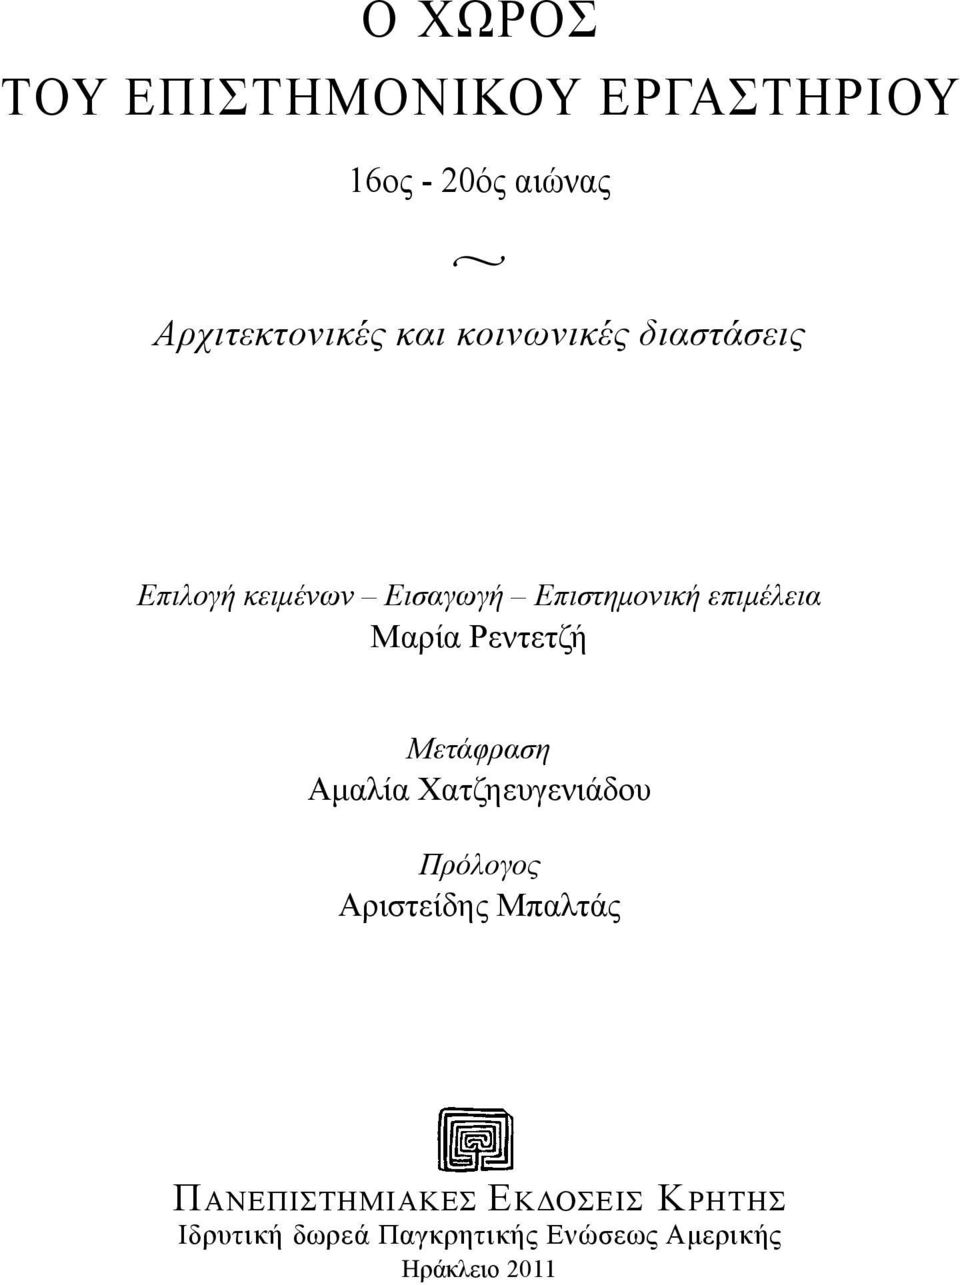 Ρεντετζή Μετάφραση Αμαλία Χατζηευγενιάδου Πρόλογος Αριστείδης Μπαλτάς